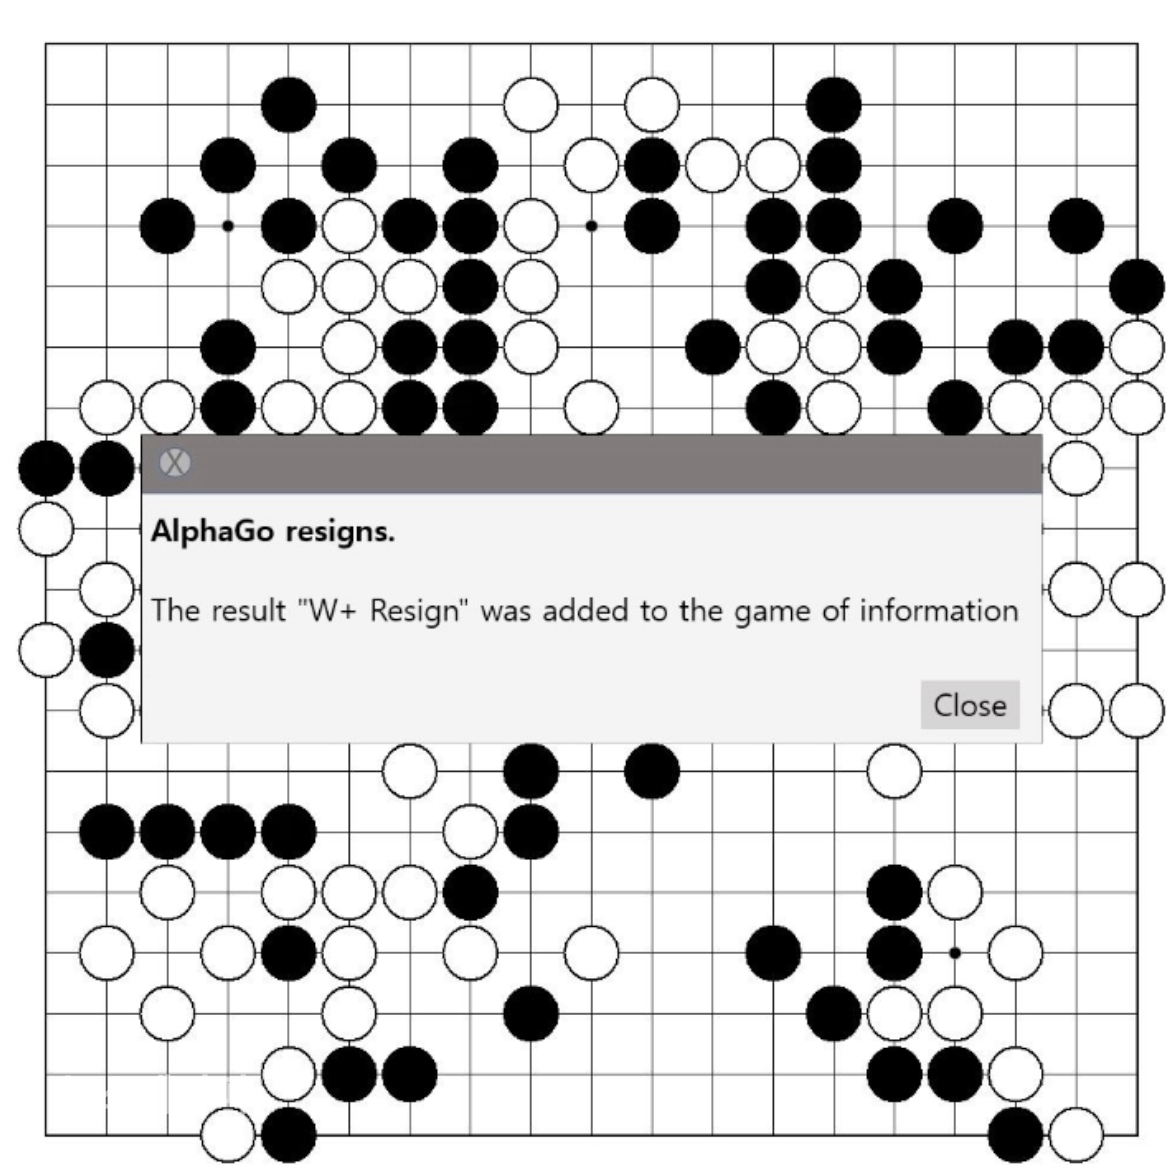 [알파고 기권, “Lee Sedol vs. AlphaGo, Round 4” 작품 캡쳐]